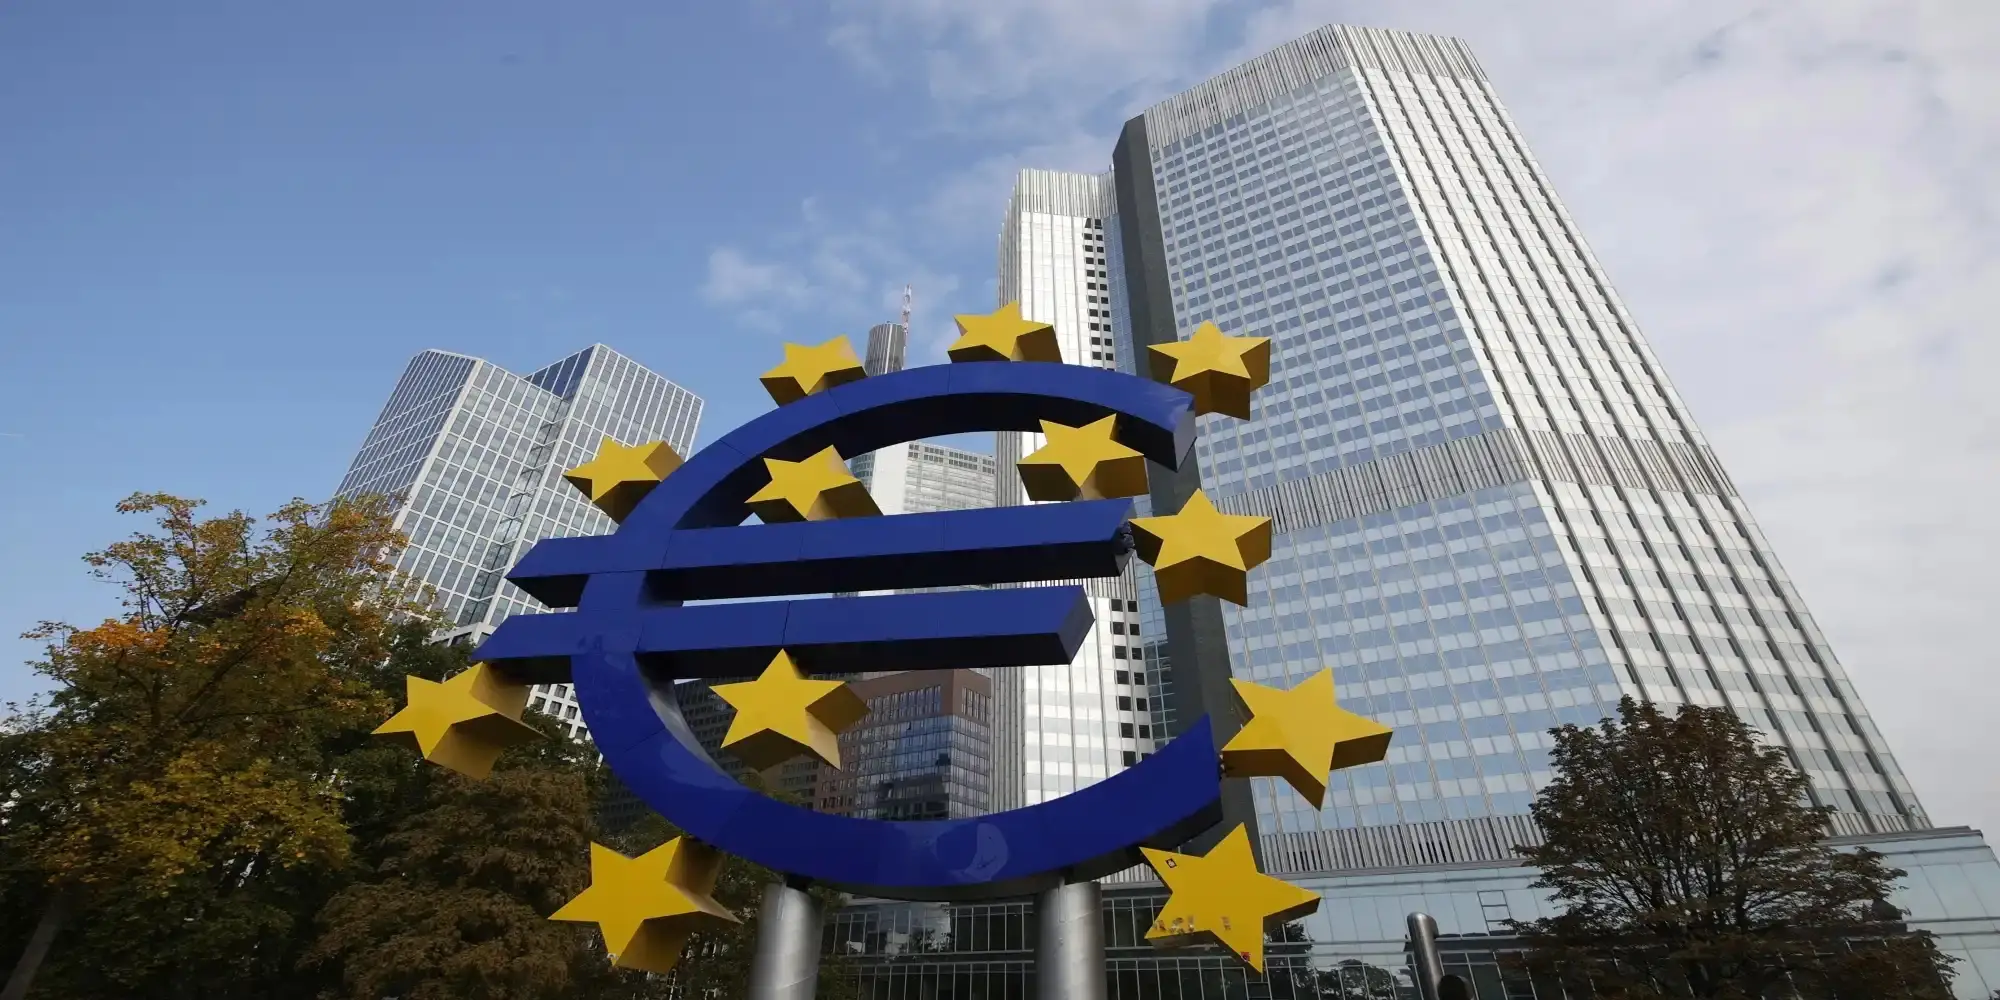 Ευρωπαϊκή Κεντρική Τράπεζα